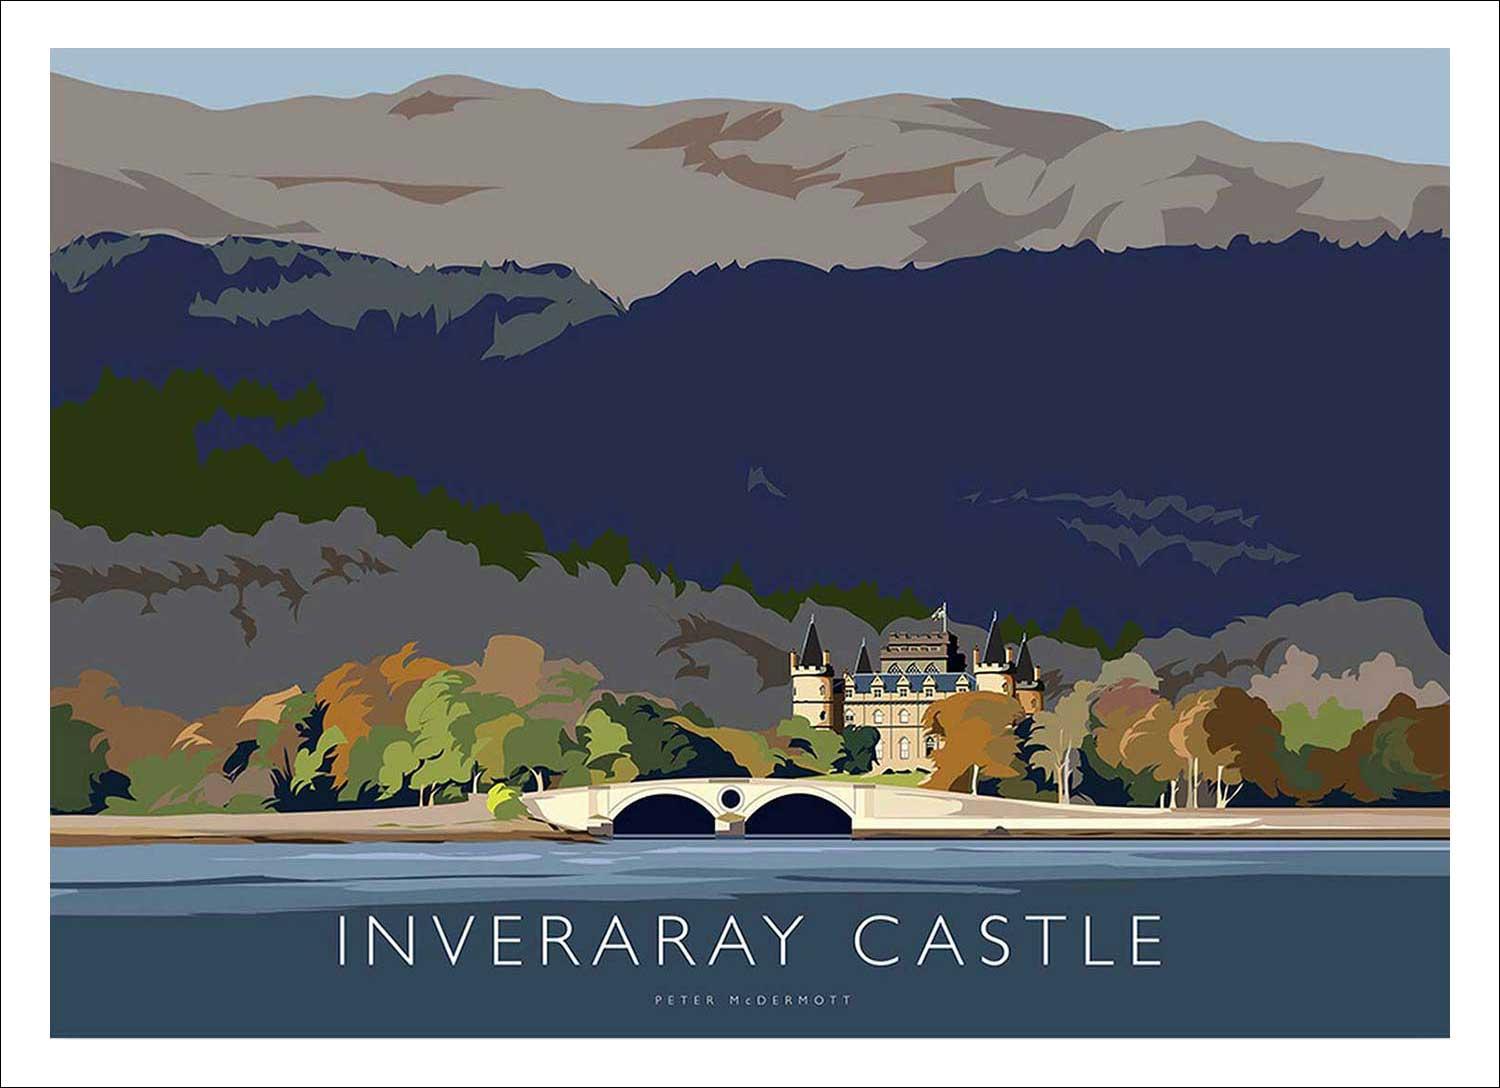 Inveraray Castle Art Print from an original illustration by artist Peter McDermott